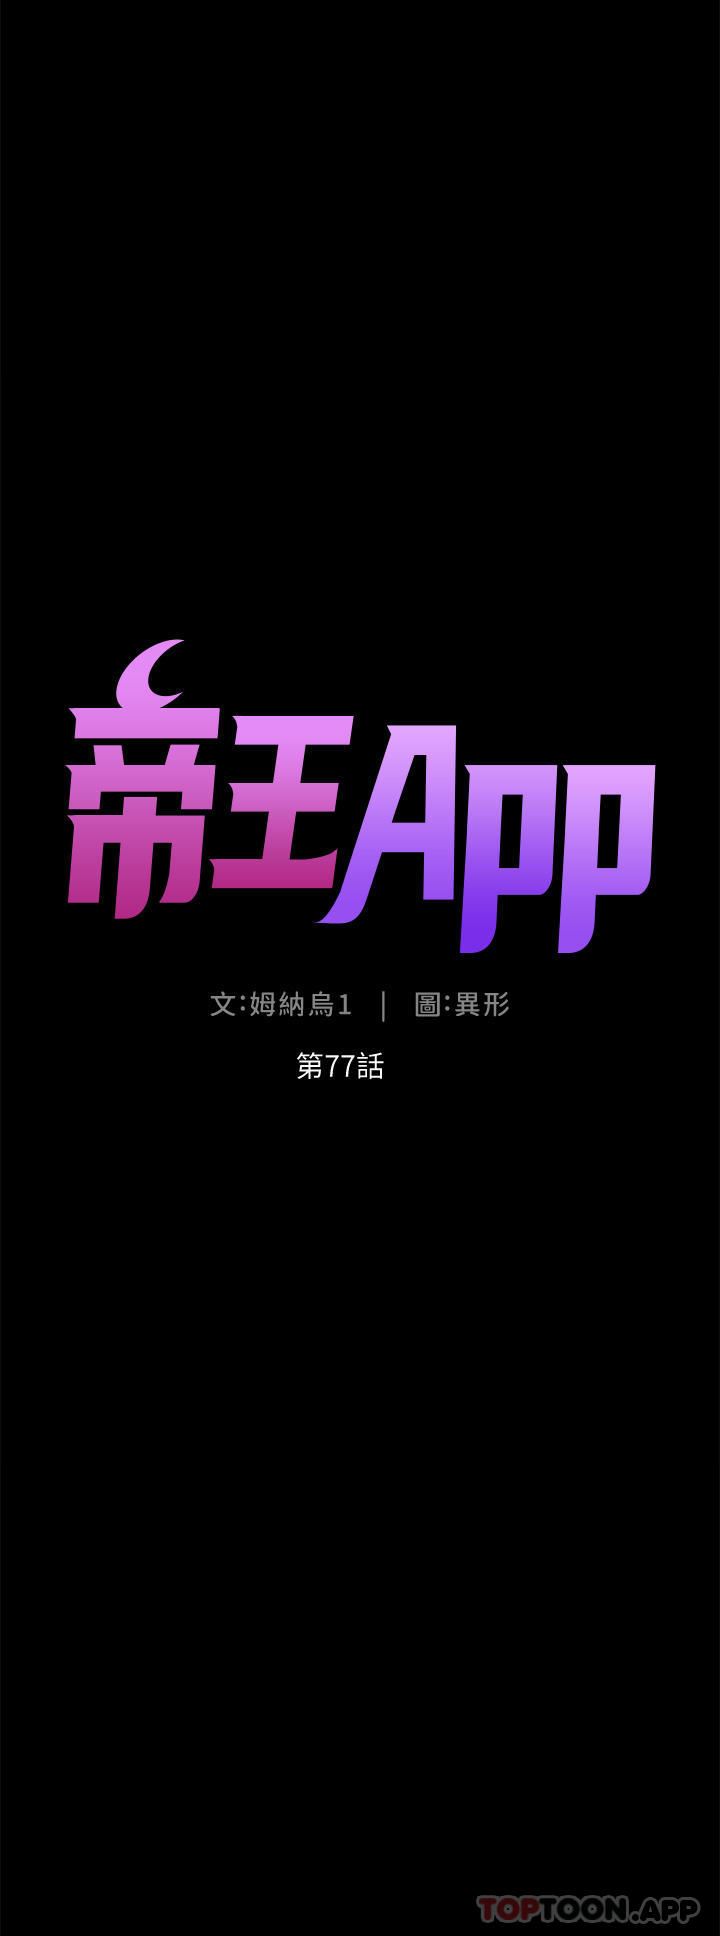 帝王App-第77章-图片5